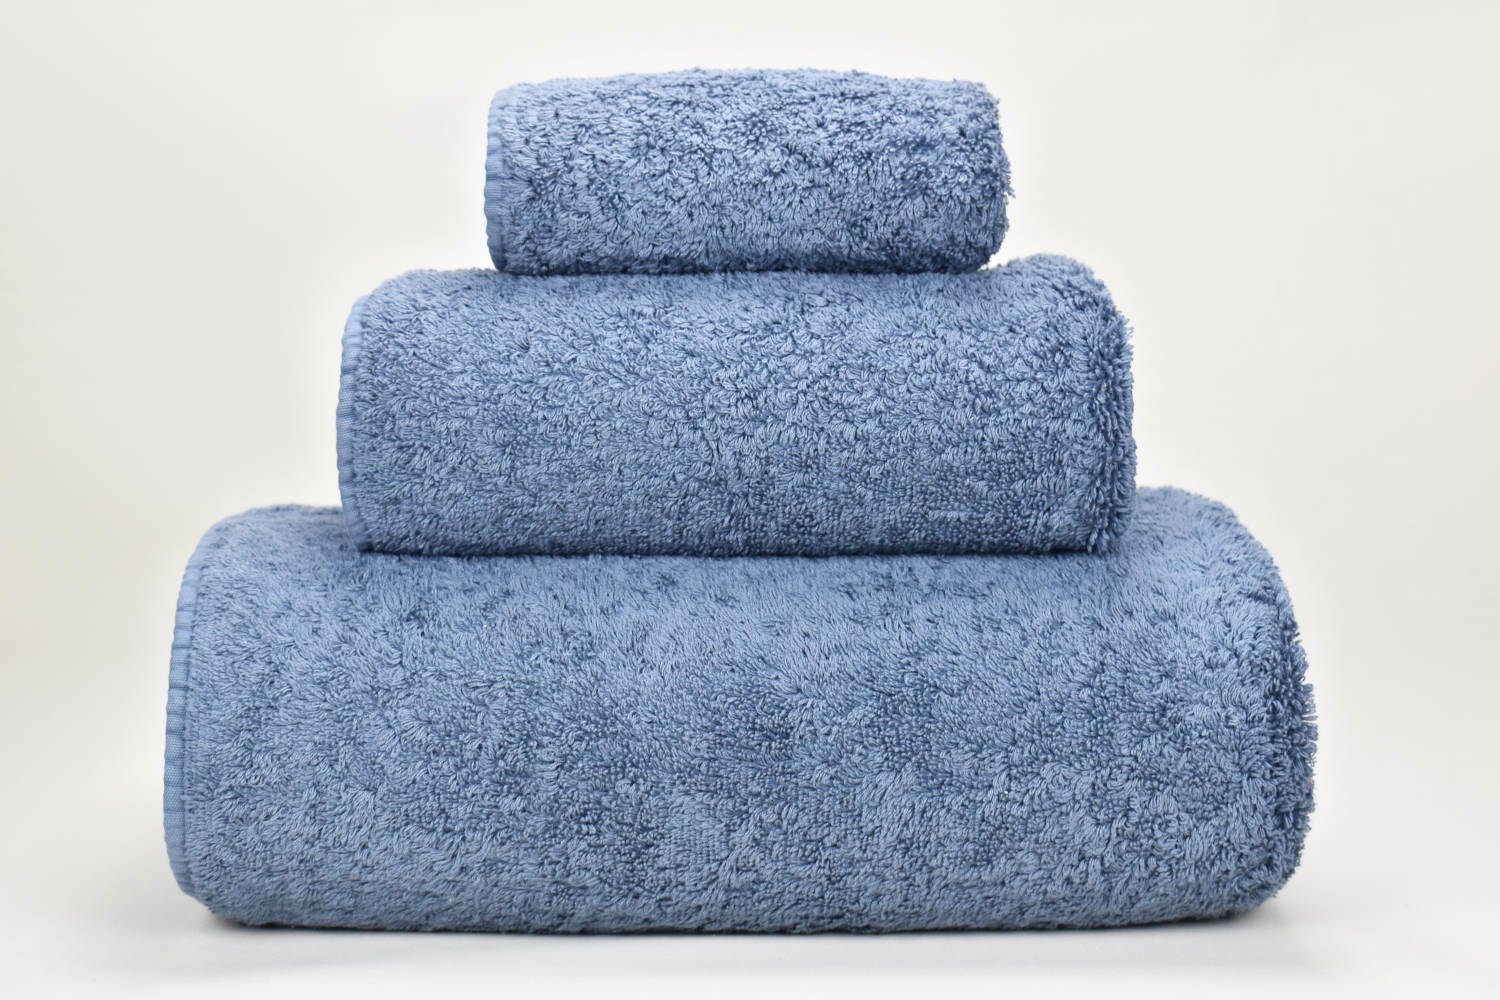 toalha de banho habidecor azul escuro